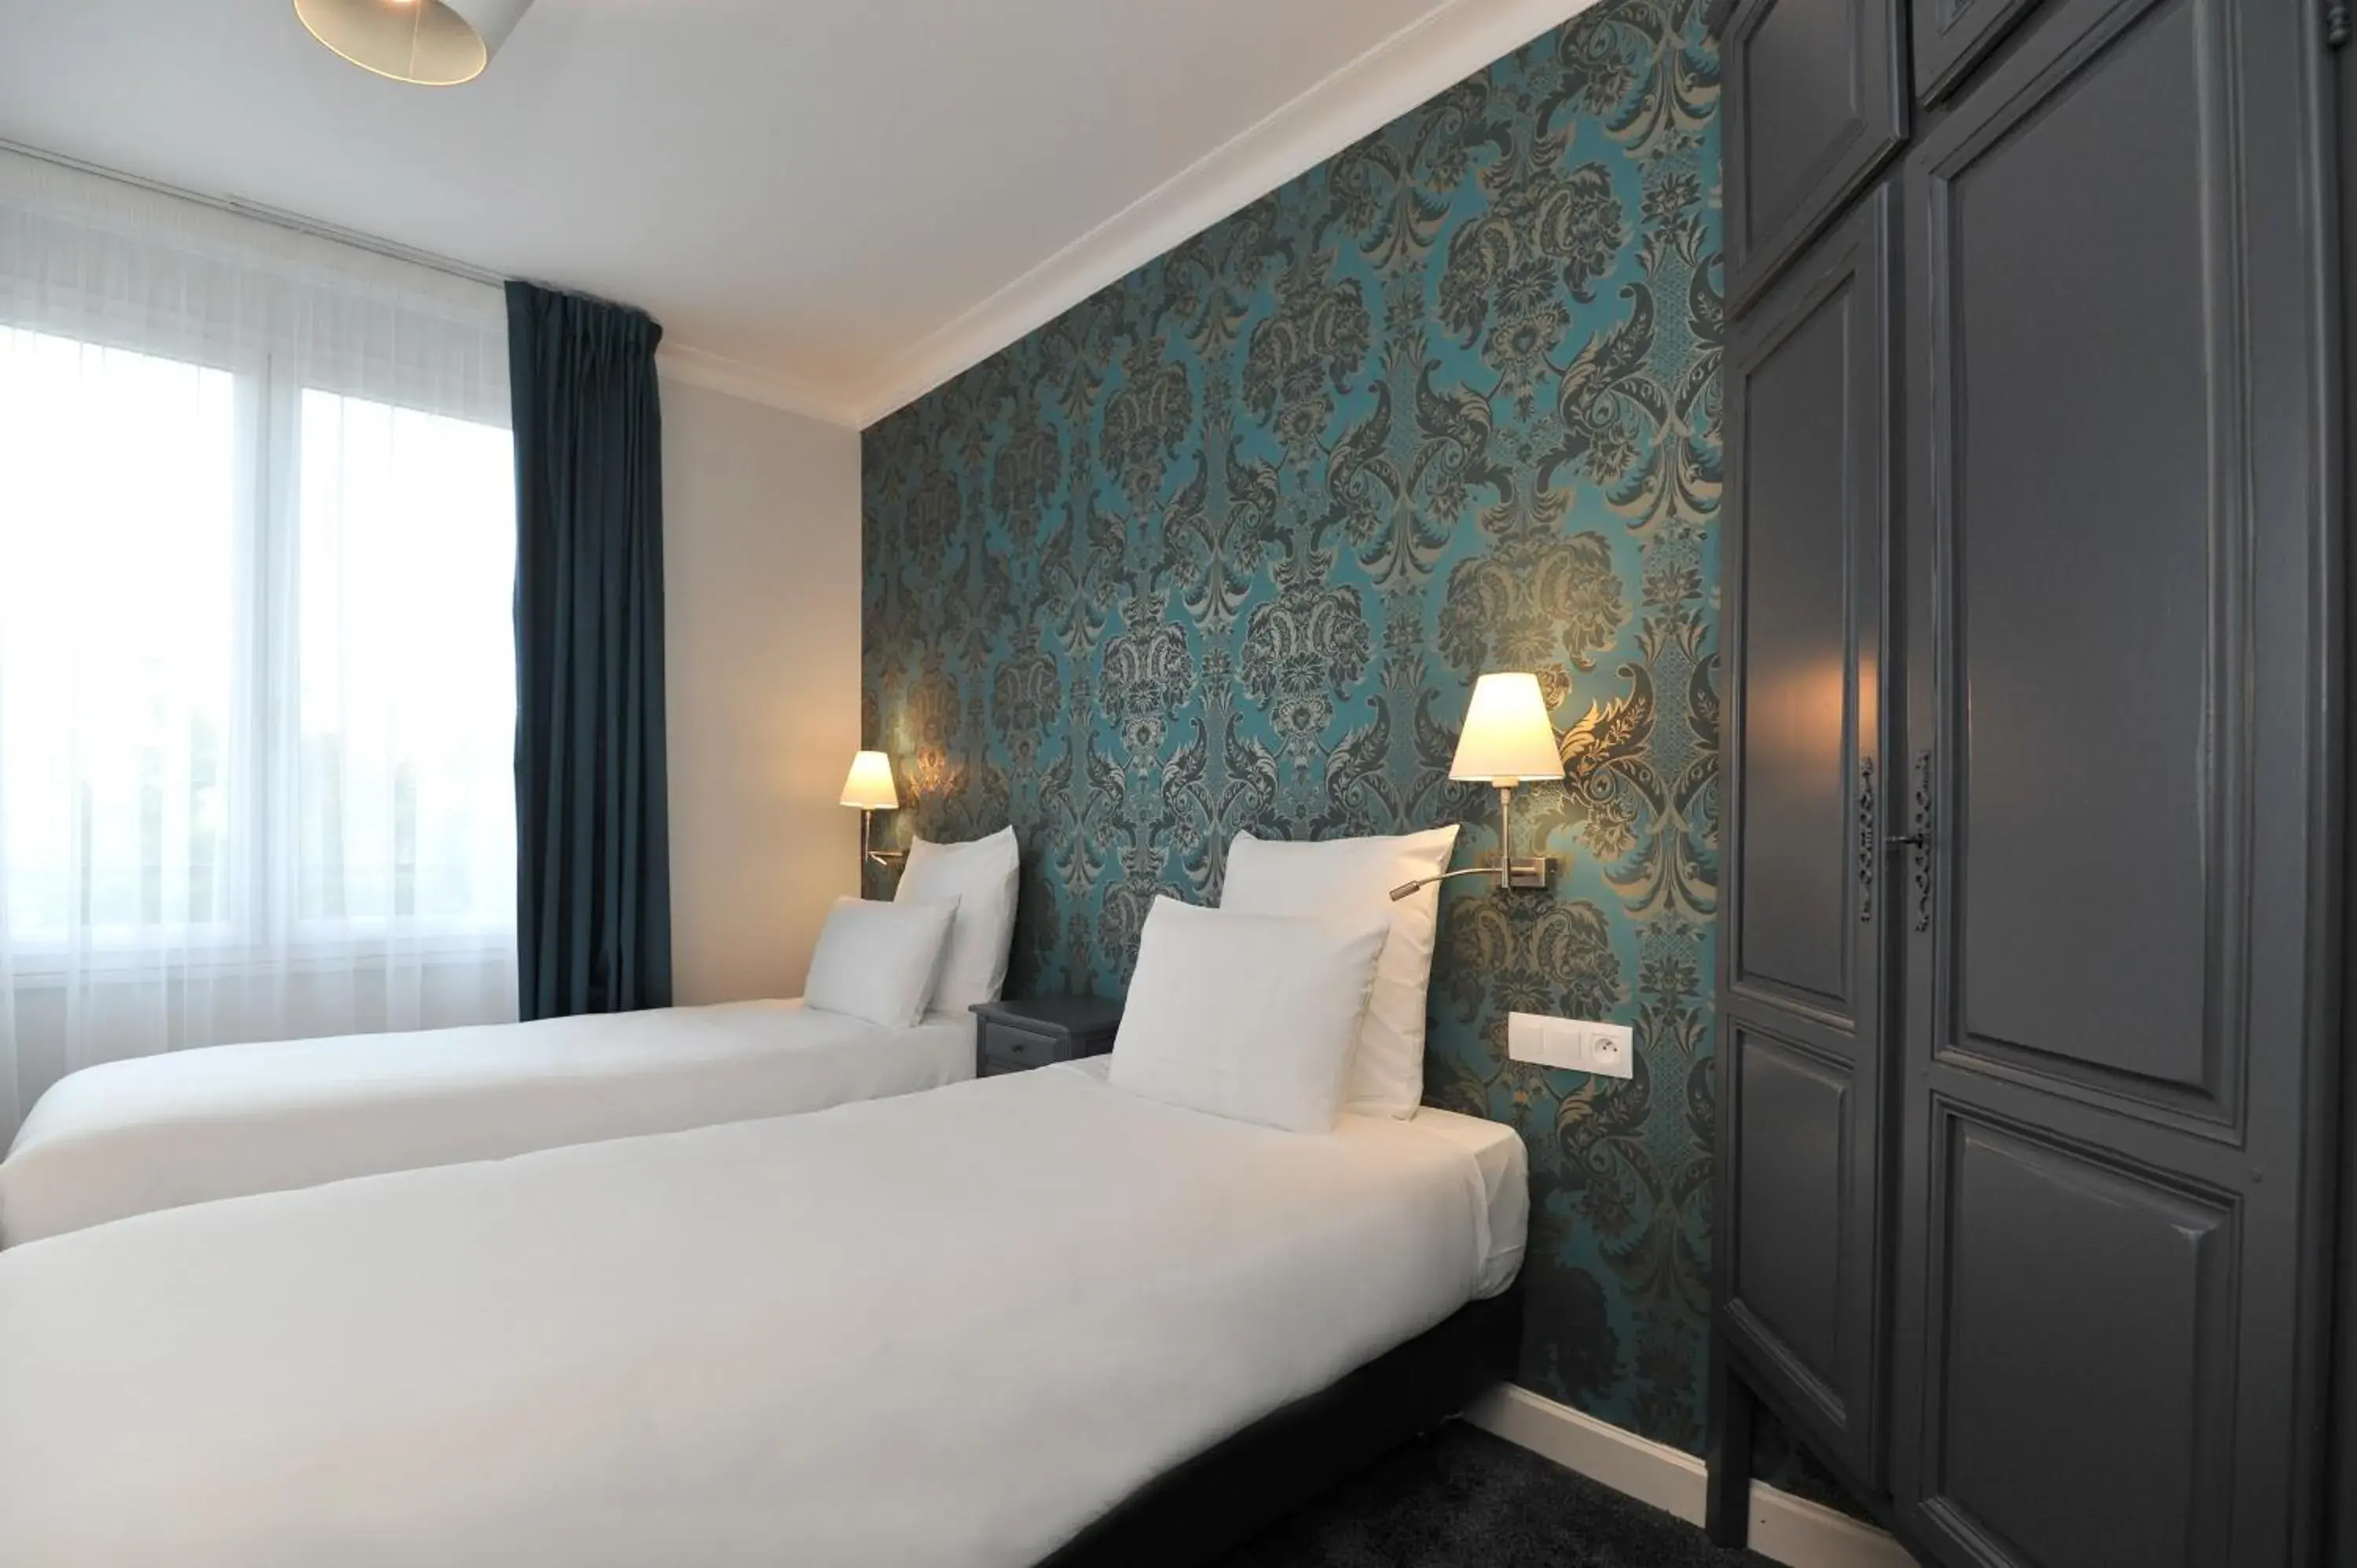 Bed, Room Photo in Mercure Paris Saint Cloud Hippodrome